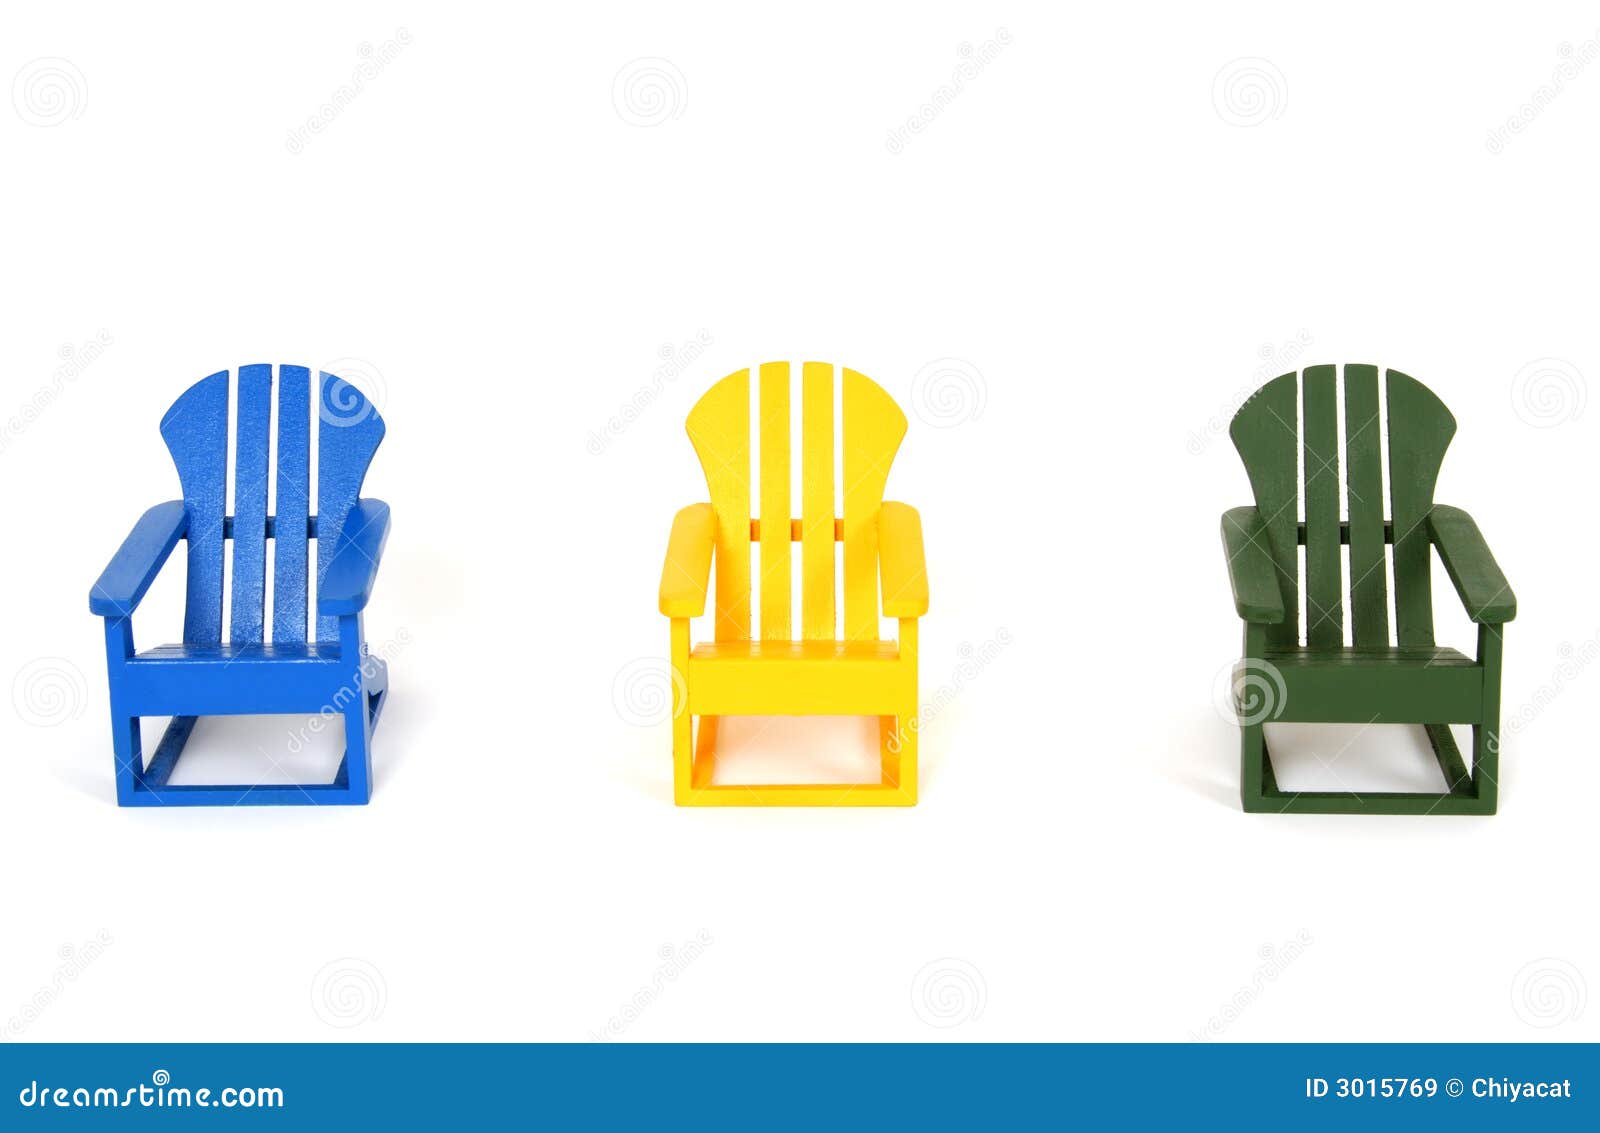 muskoka chairs